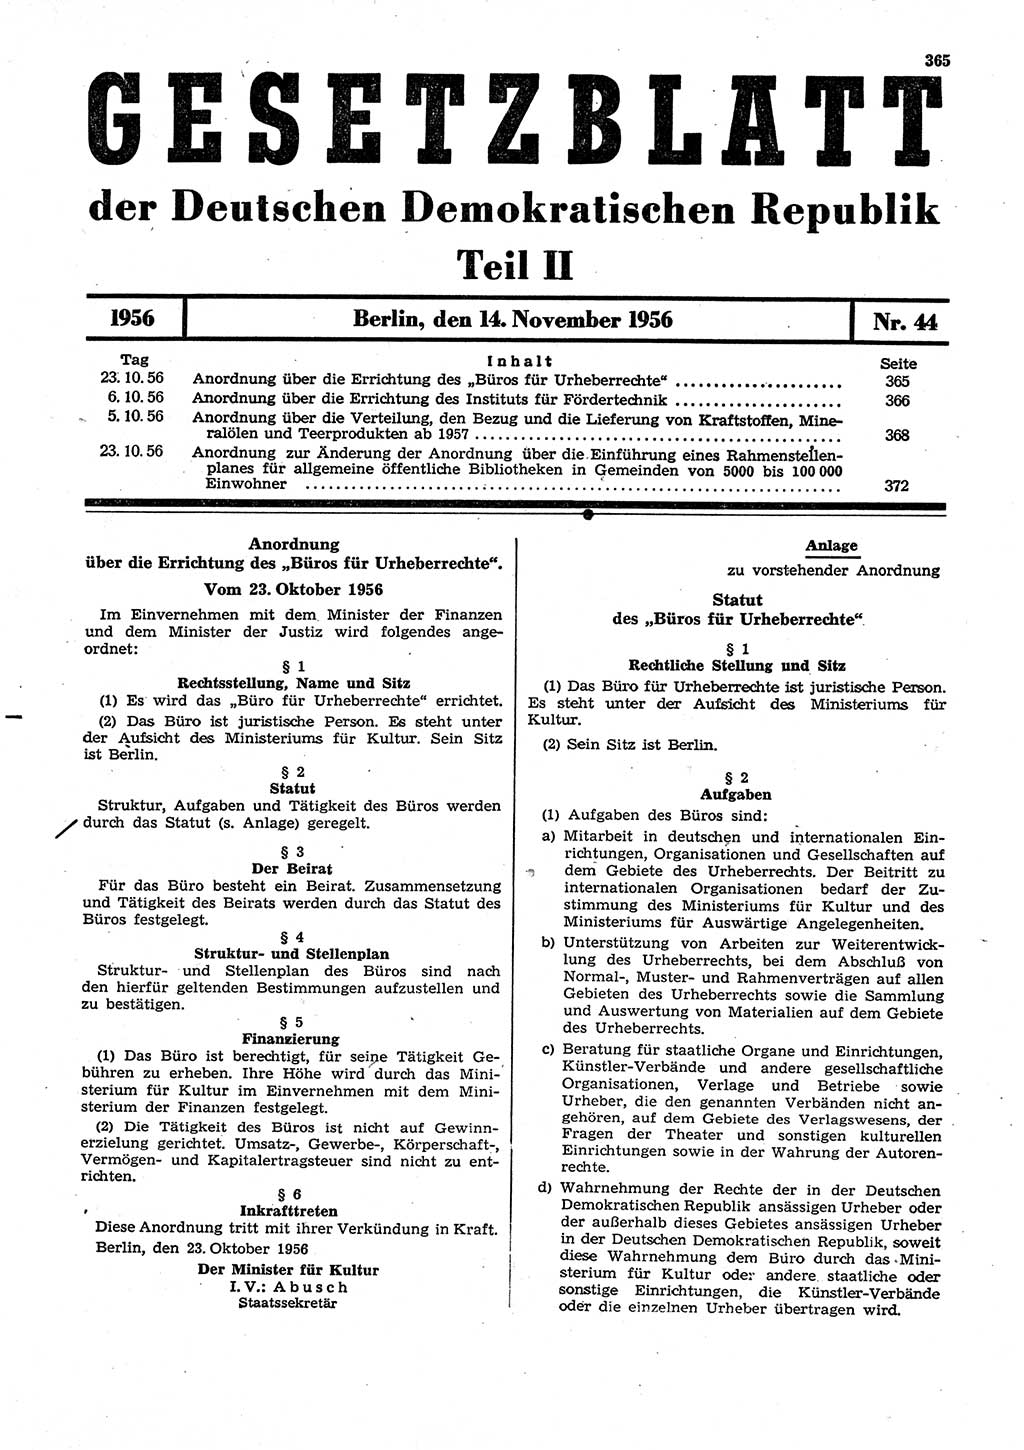 Gesetzblatt (GBl.) der Deutschen Demokratischen Republik (DDR) Teil ⅠⅠ 1956, Seite 365 (GBl. DDR ⅠⅠ 1956, S. 365)